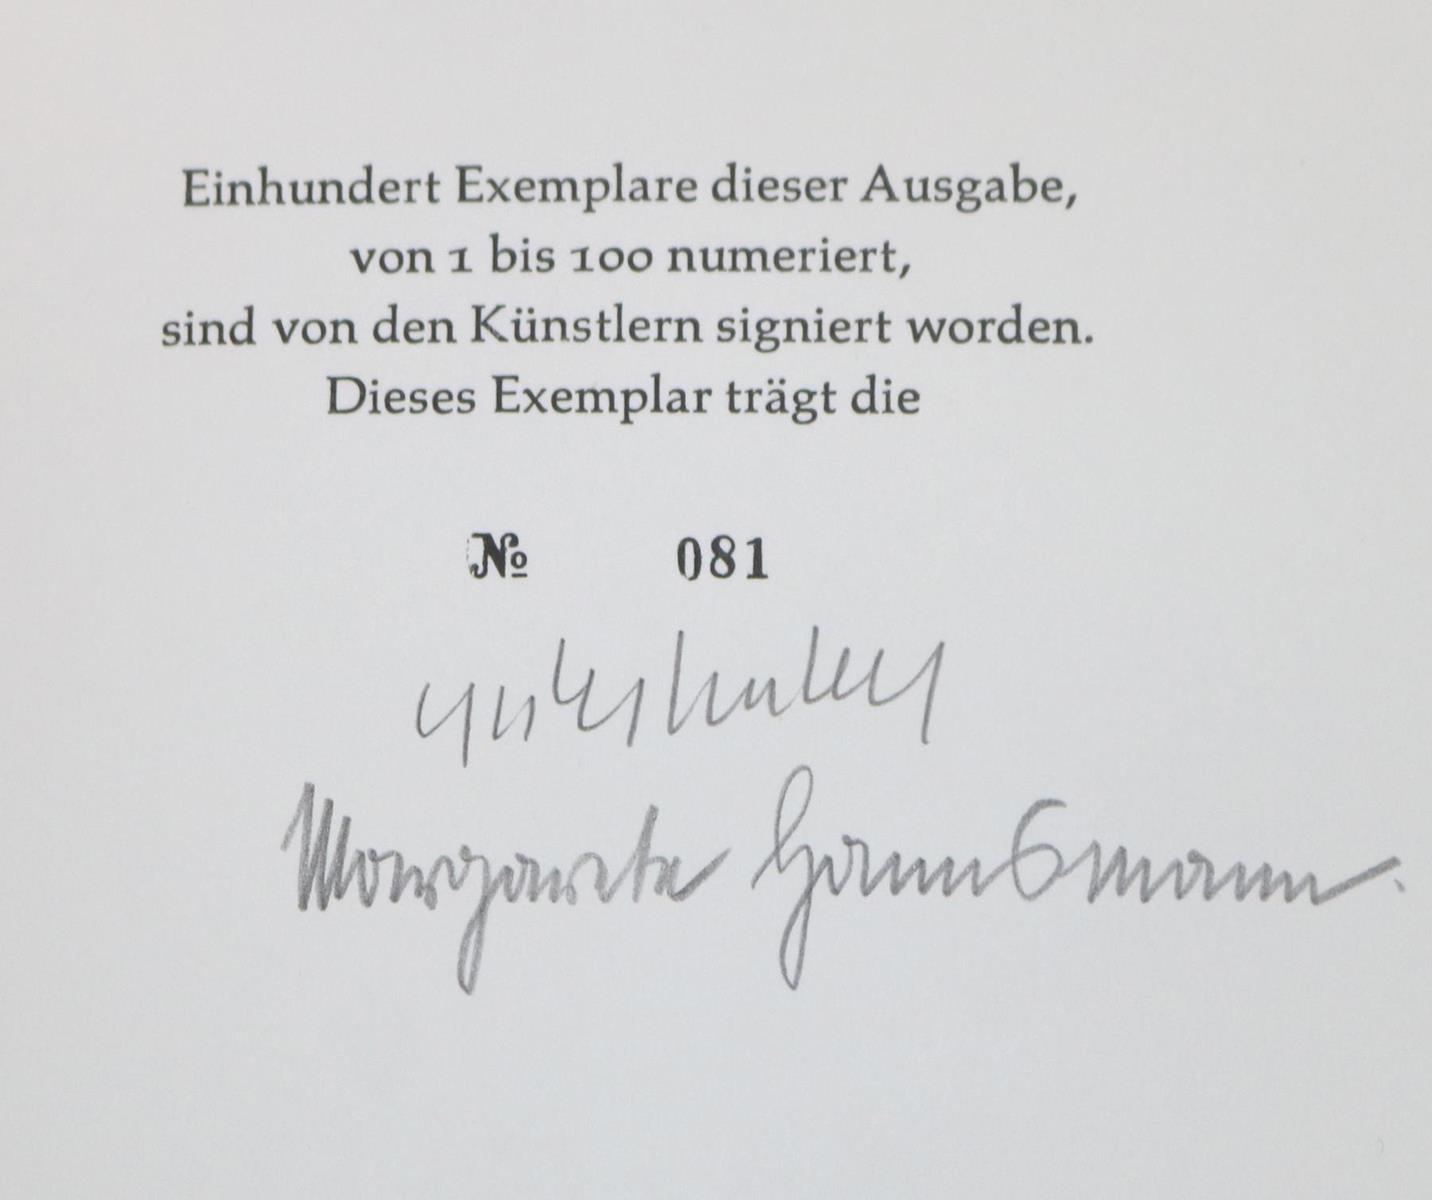 Hannsmann,M. | Bild Nr.2